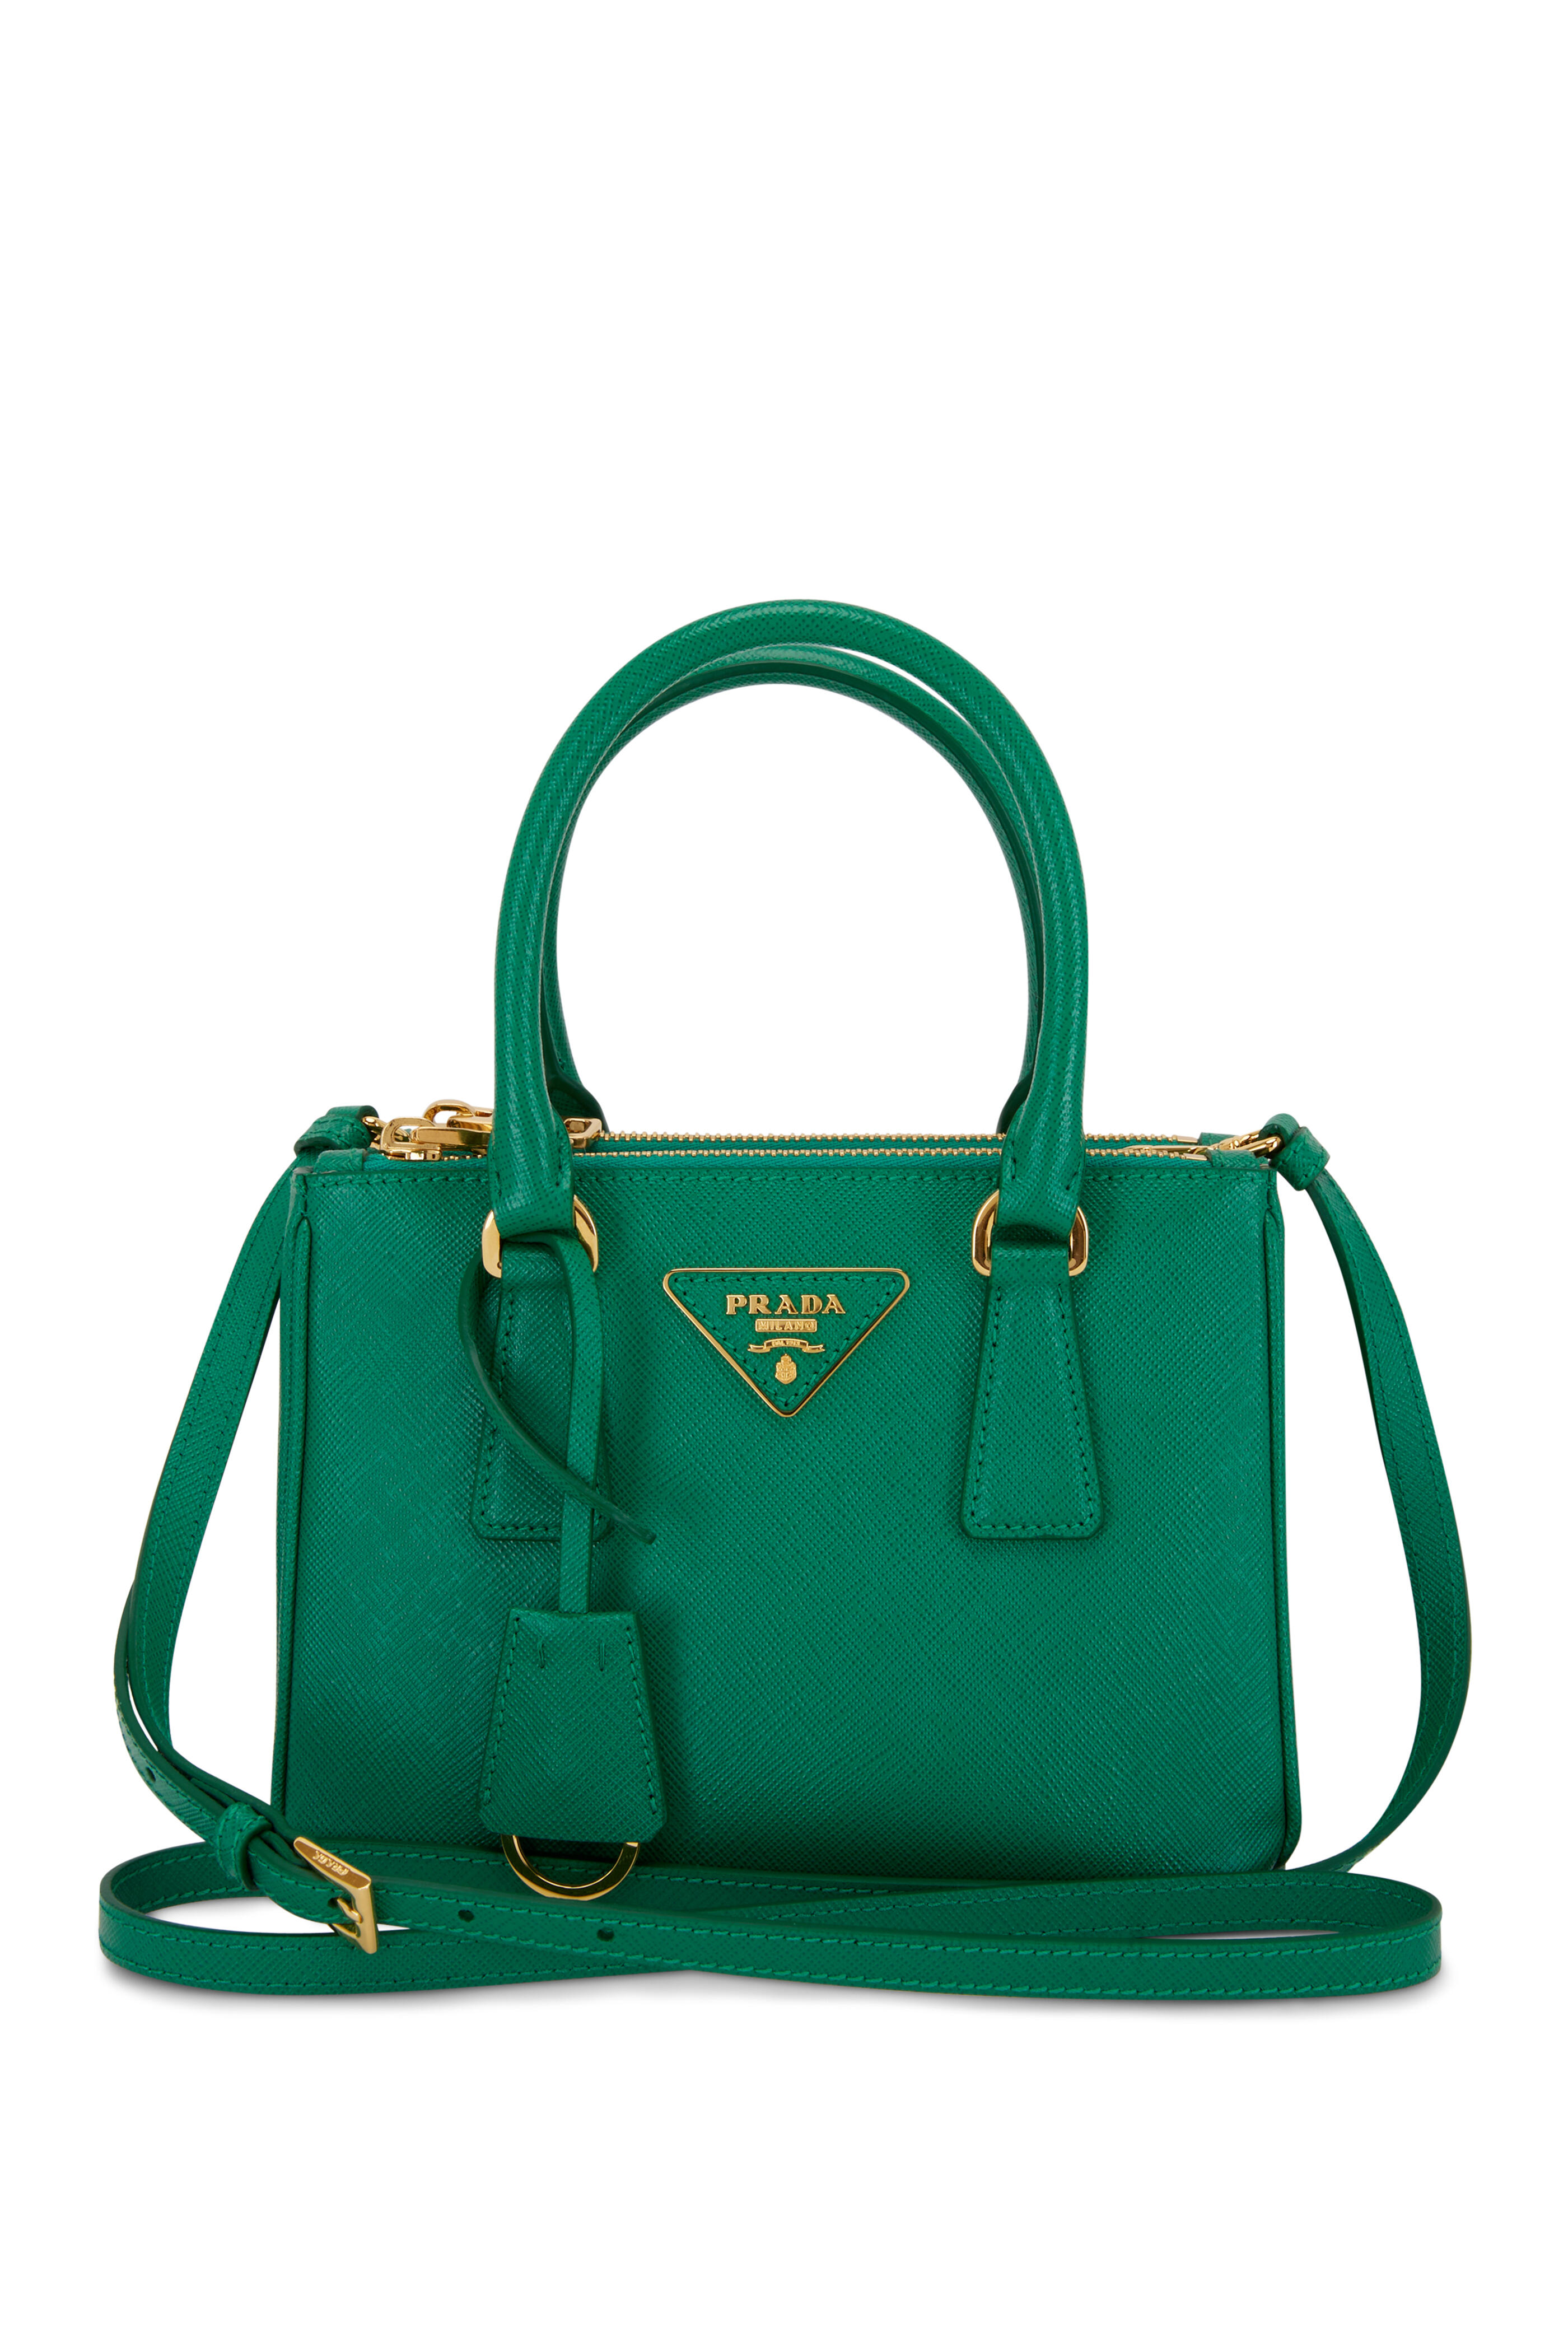 Prada Micro Saffiano Galleria Handbag